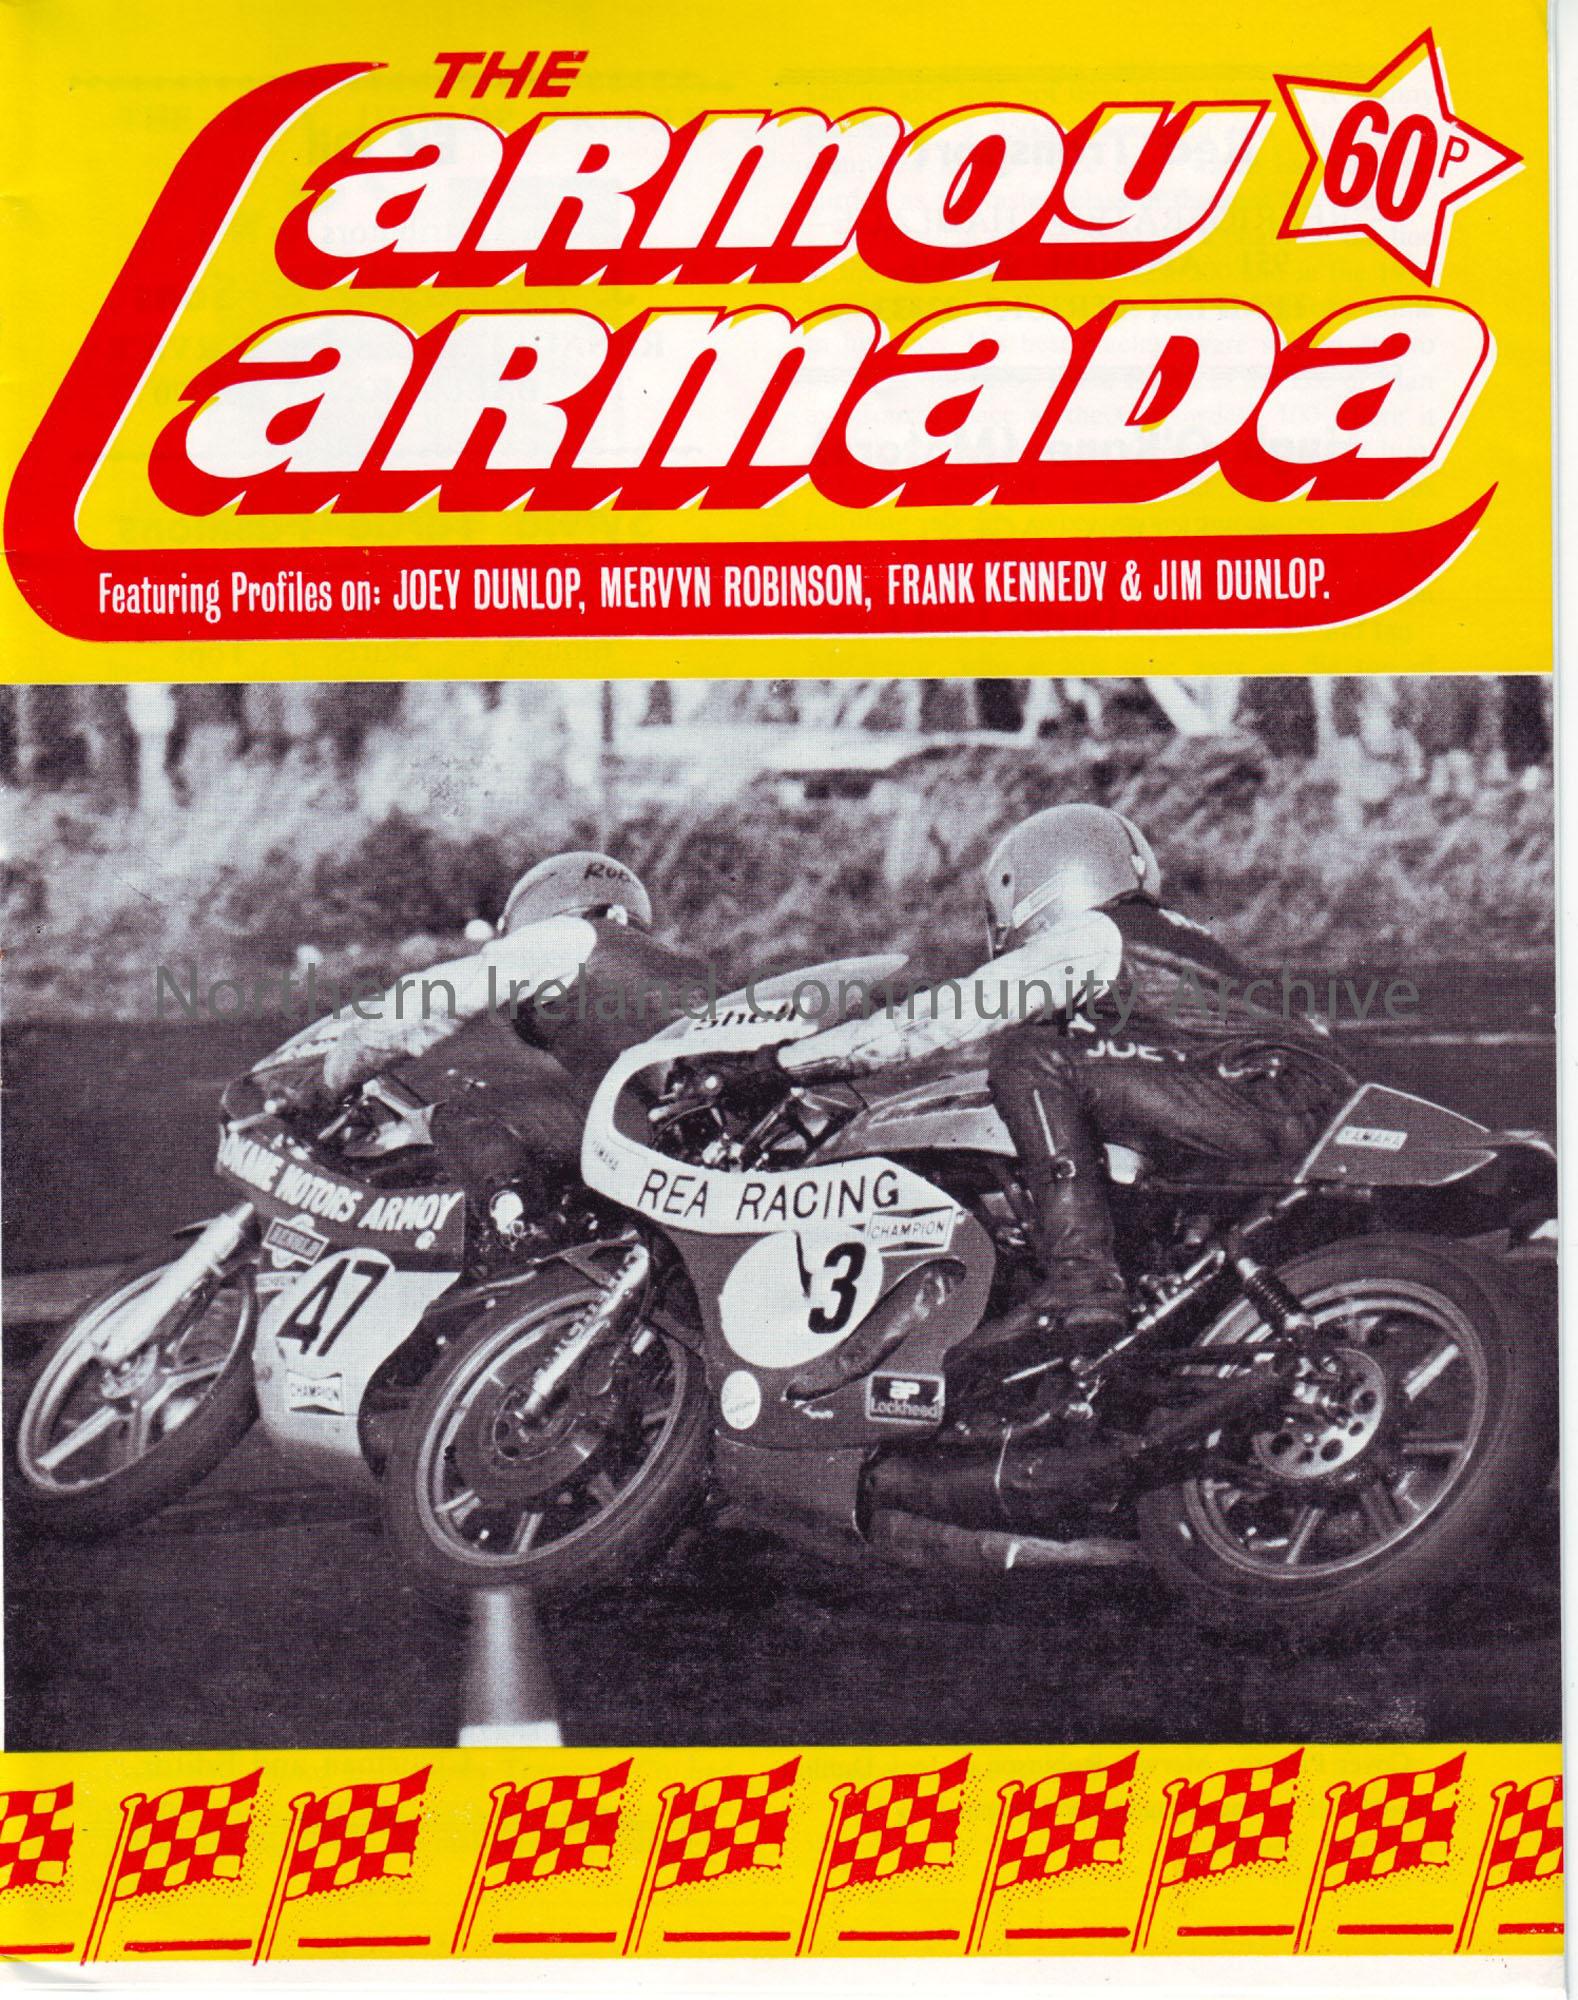 The Armoy Armada featuring profiles on: Joey Dunlop, Mervyn Robinson, Frank Kennedy & Jim Dunlop.